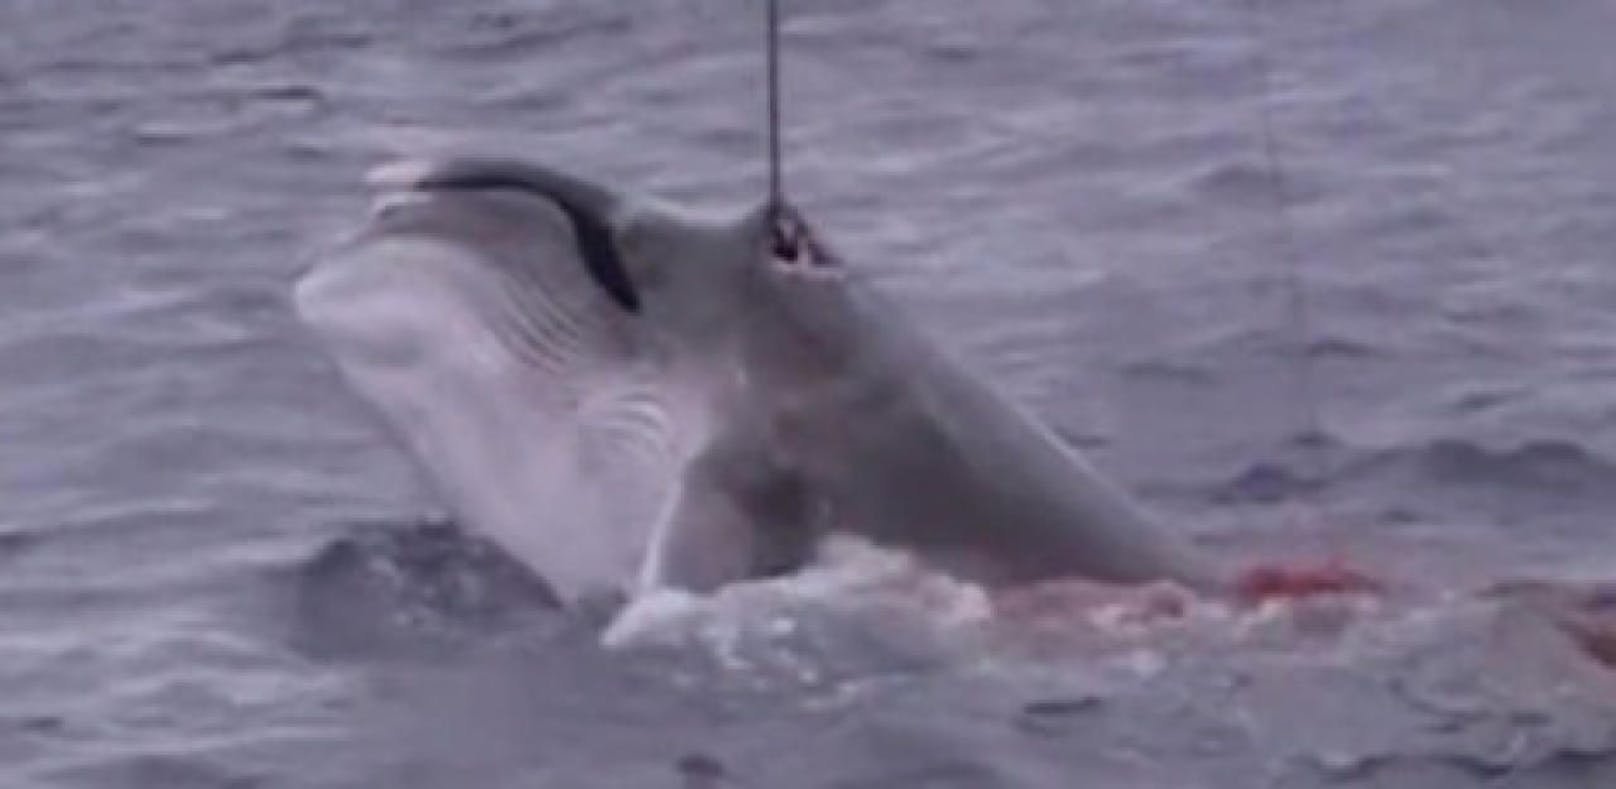 Verbotene Aufnahmen zeigen brutalen Walfang